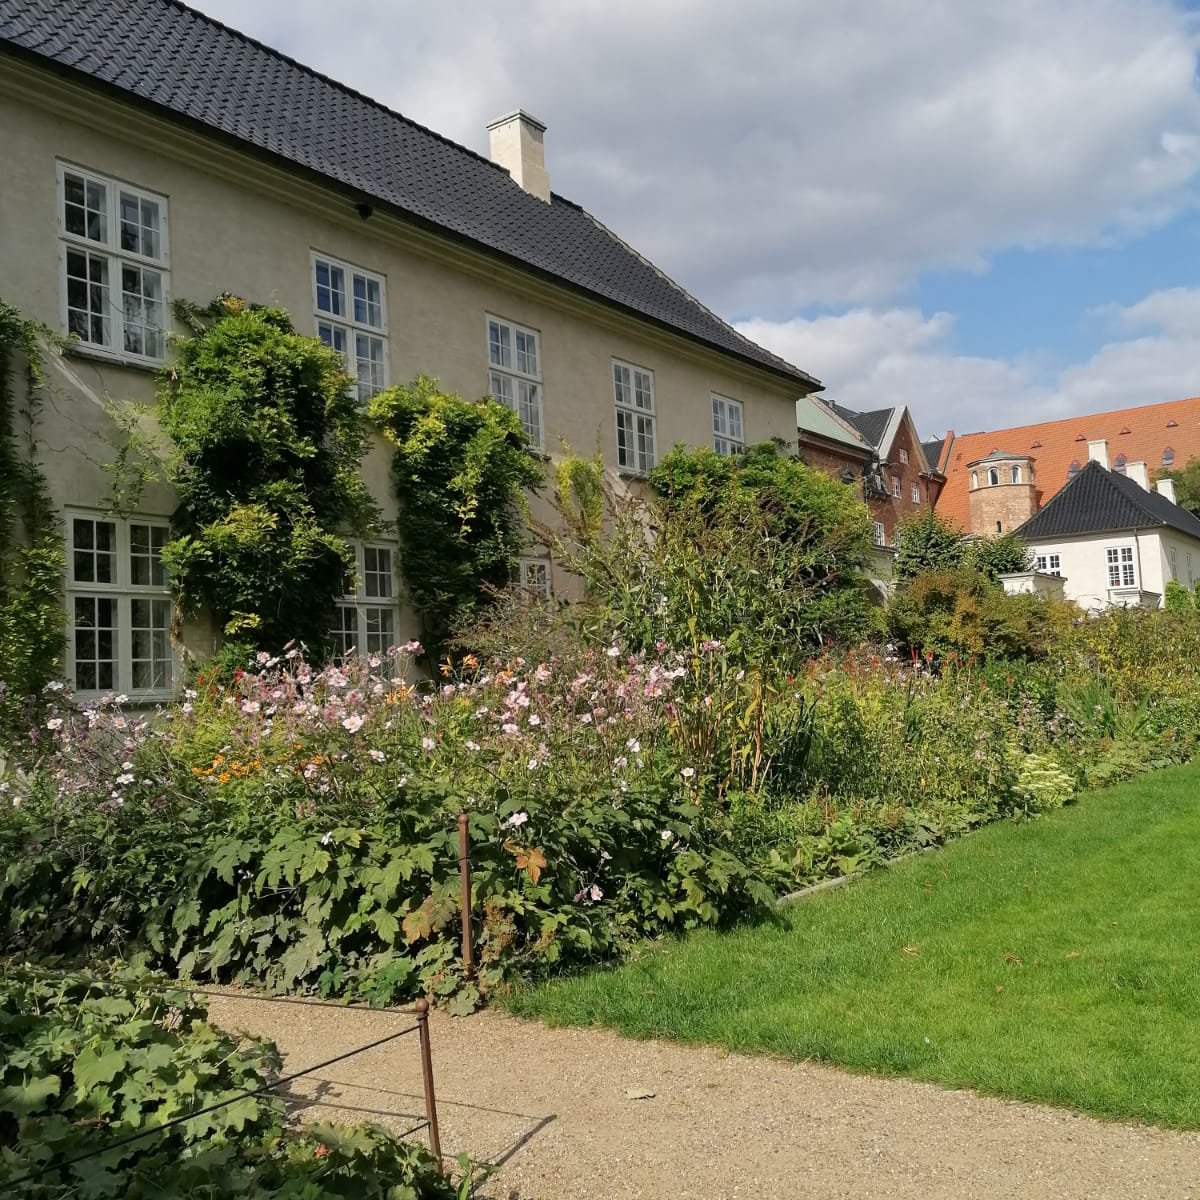 Nur drei Minuten entfernt von meiner Wohnung: die Landbau- und Gärtnereischule Kopenhagens. (Foto: privat)